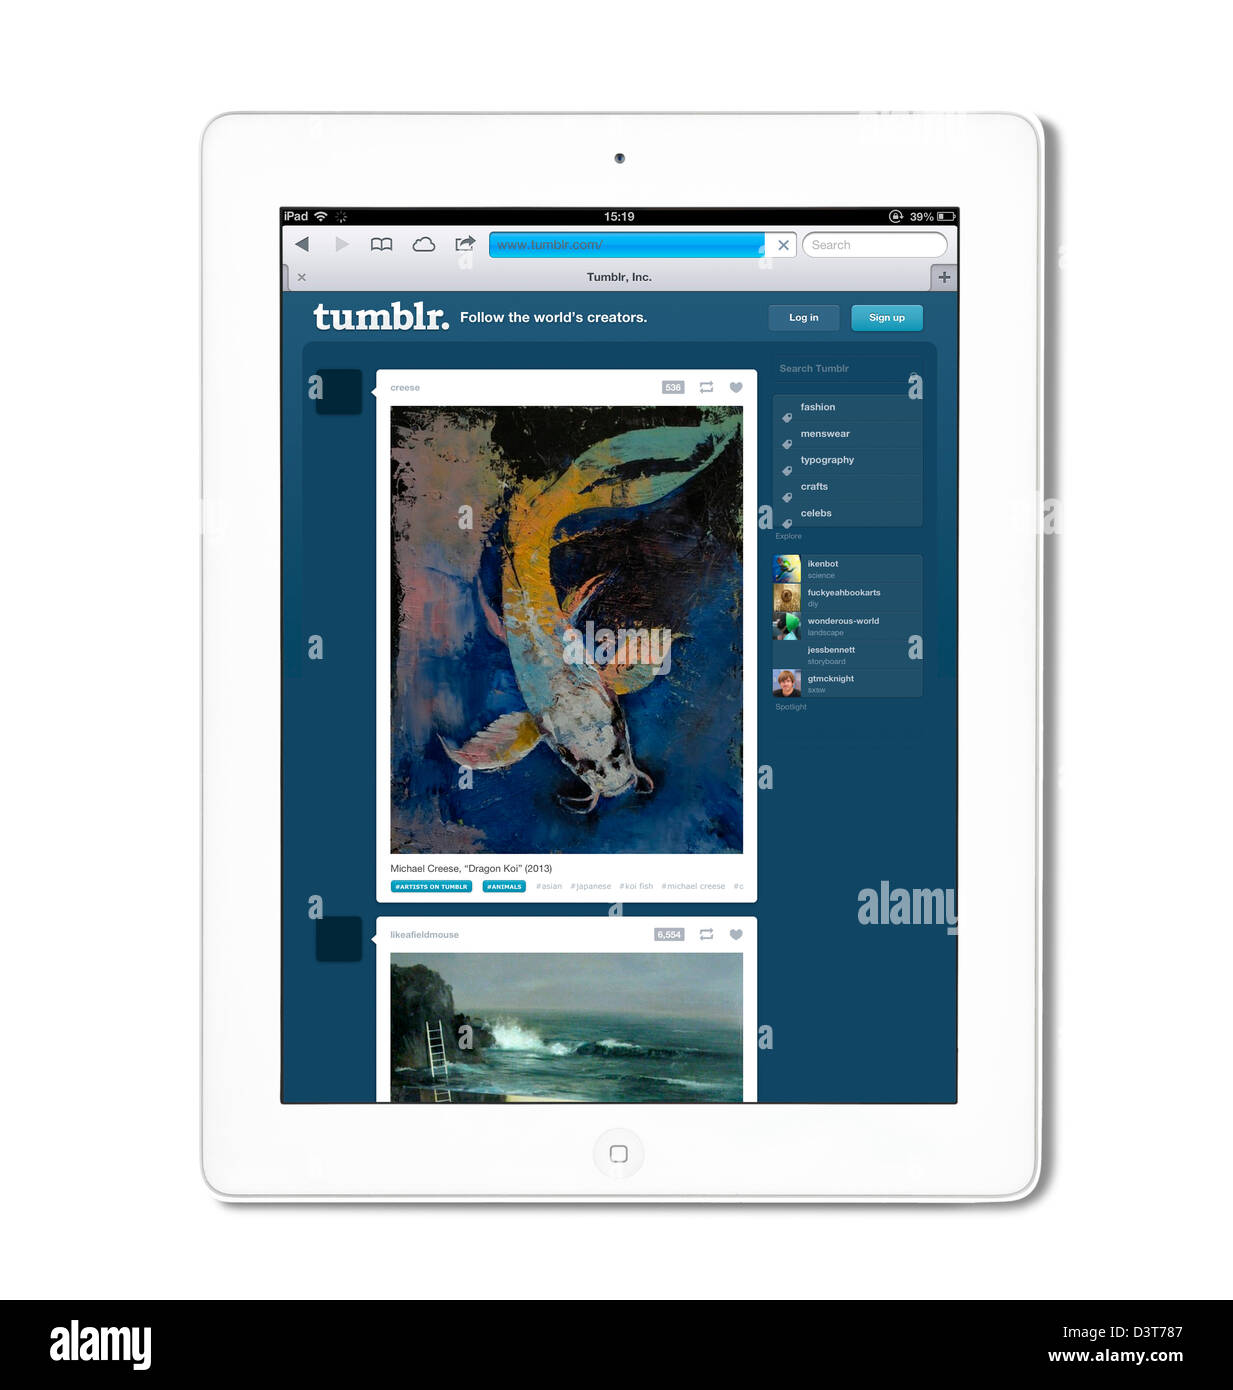 Tumblr, las redes sociales y sitios de microblogging, vistos en una 4ª generación de Apple iPad Foto de stock